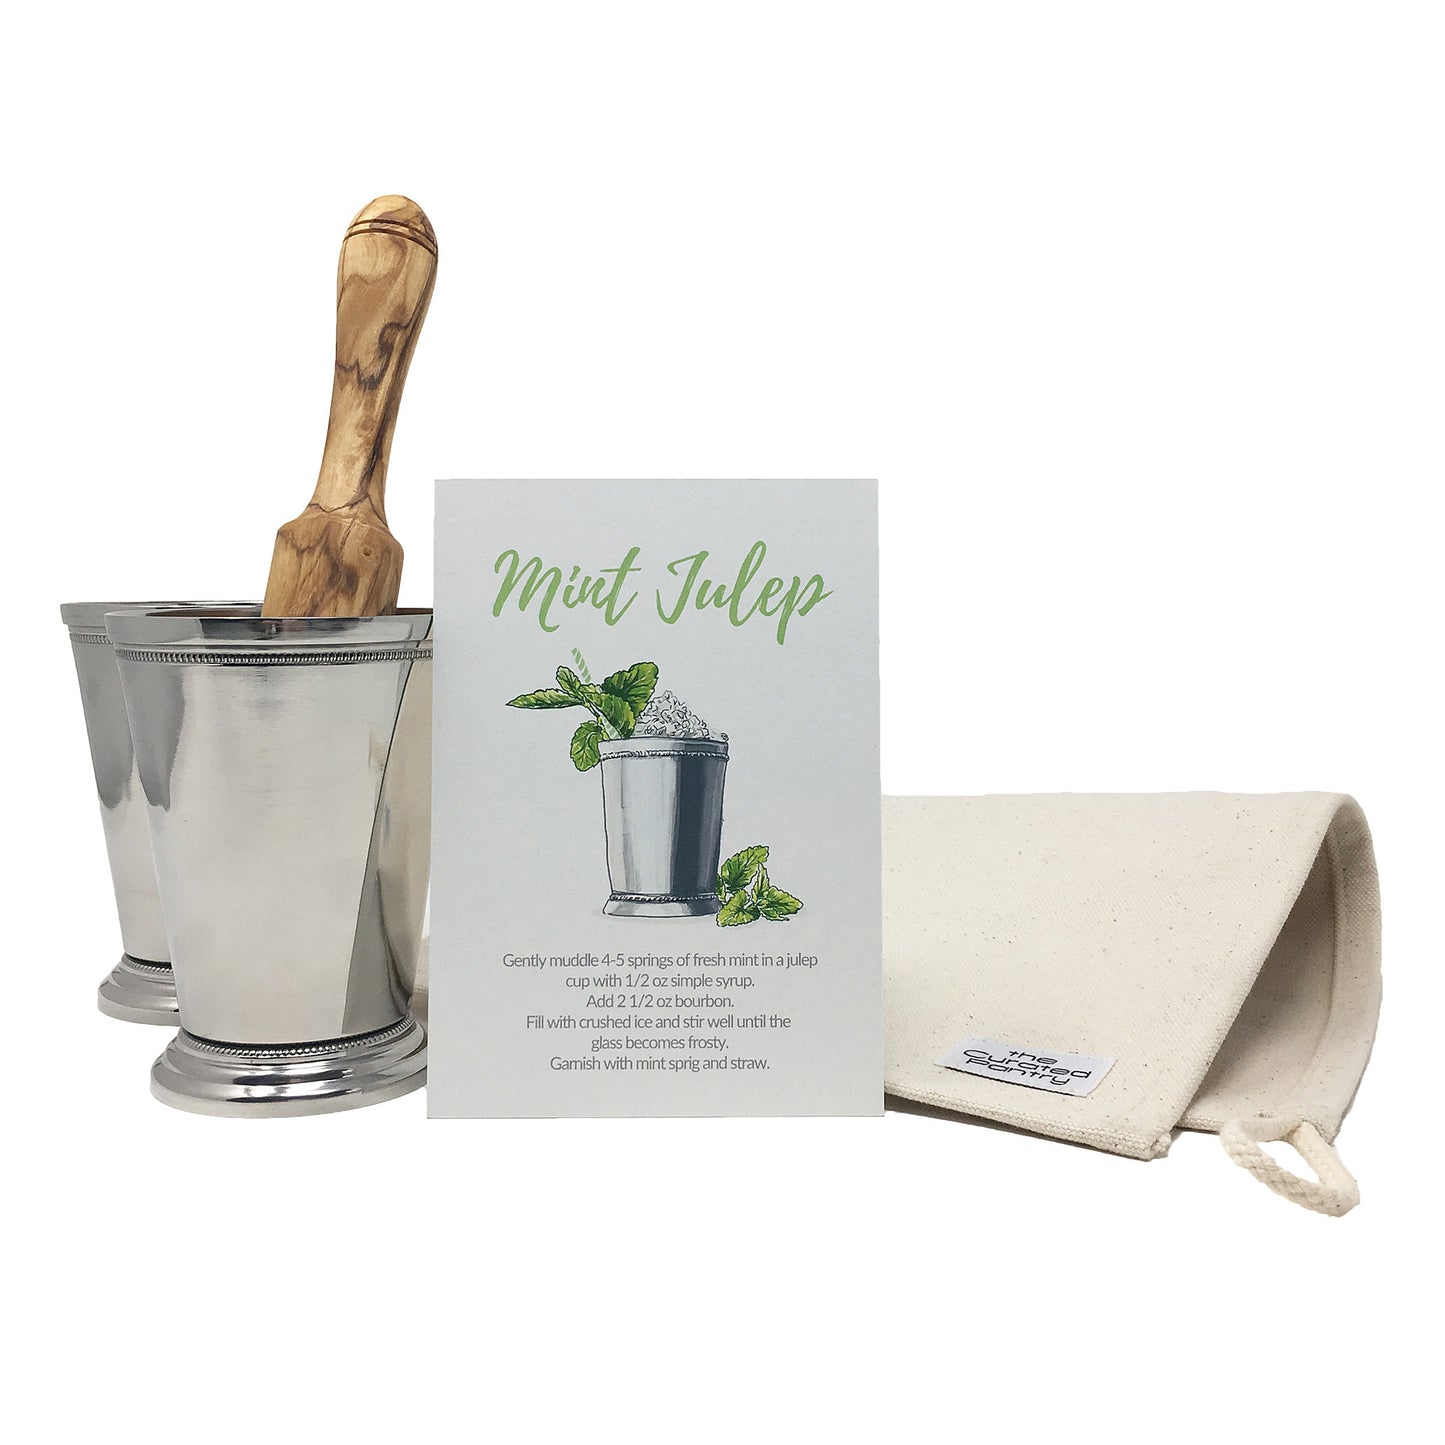 Kit de herramientas Mint Julep Essentials: incluye tazas, bolsa Lewis para picar hielo + mortero